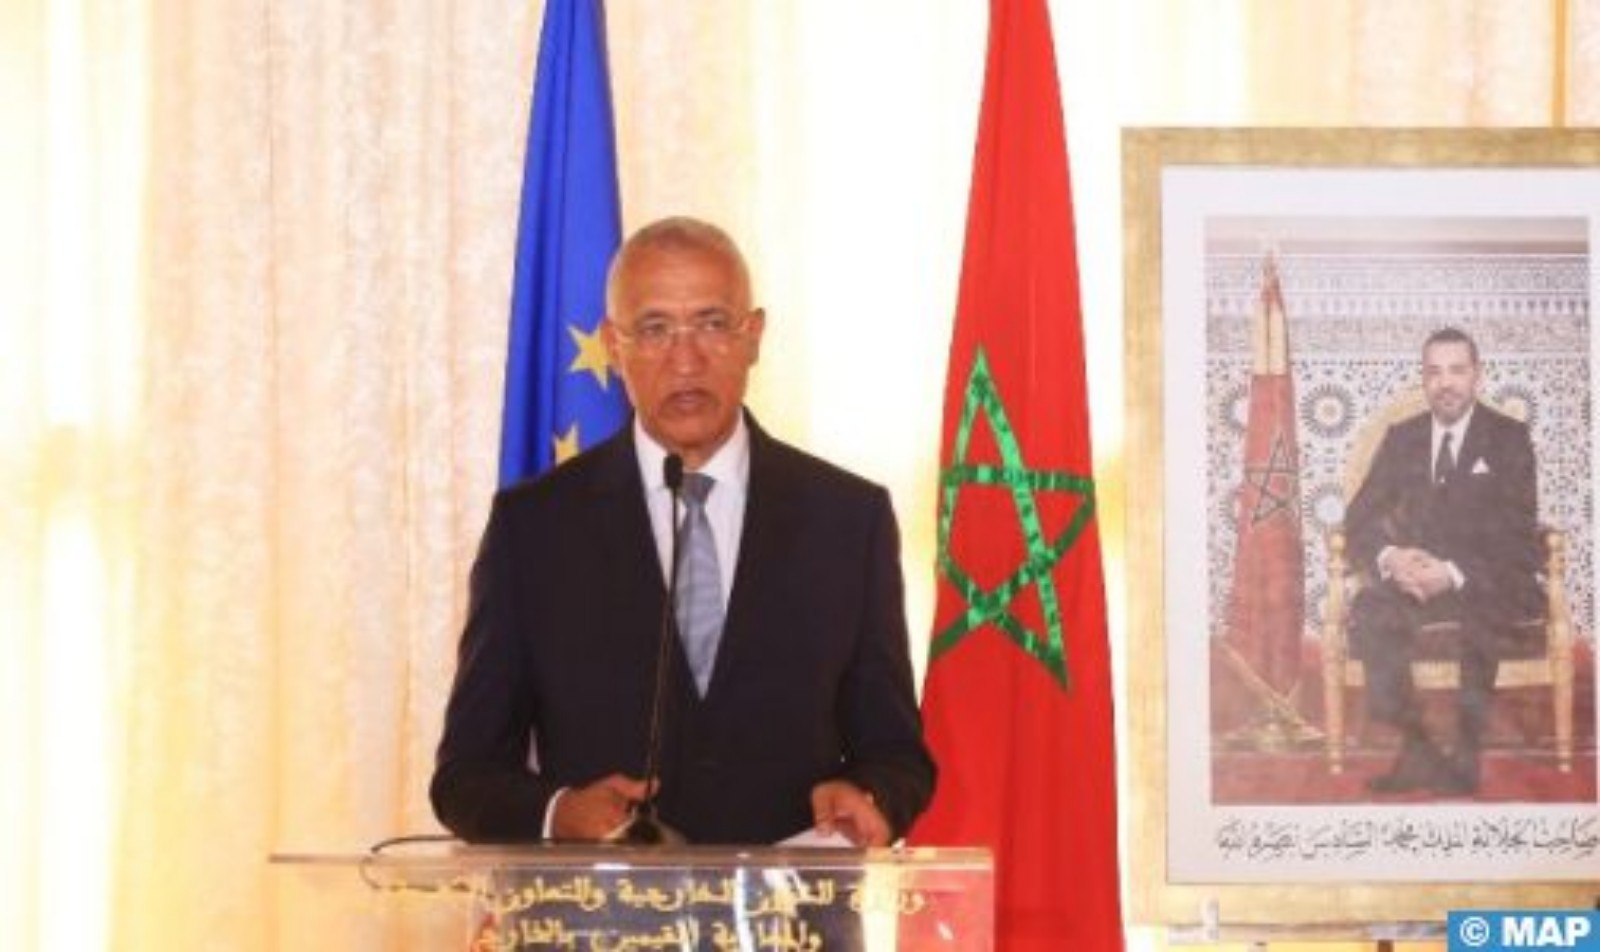 افتتاح جمهورية الرأس الأخضر لقنصلية عامة بالداخلة يؤكد دعمها للوحدة الترابية للمغرب (وزير خارجية الرأس الأخضر)